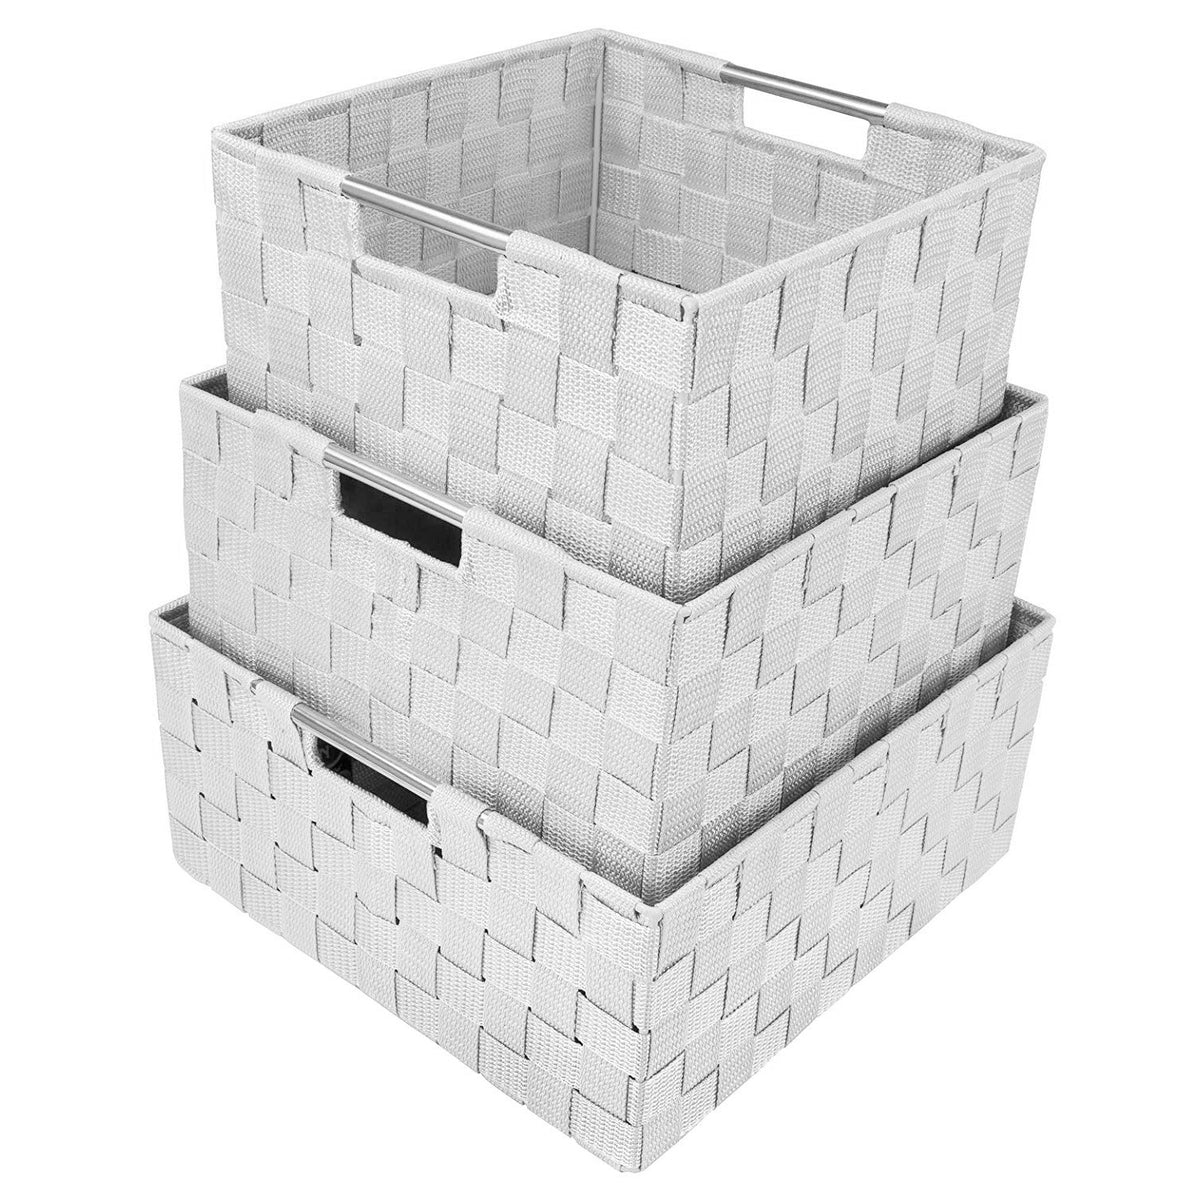 Double Woven Basket Bin Set (3 Pack)